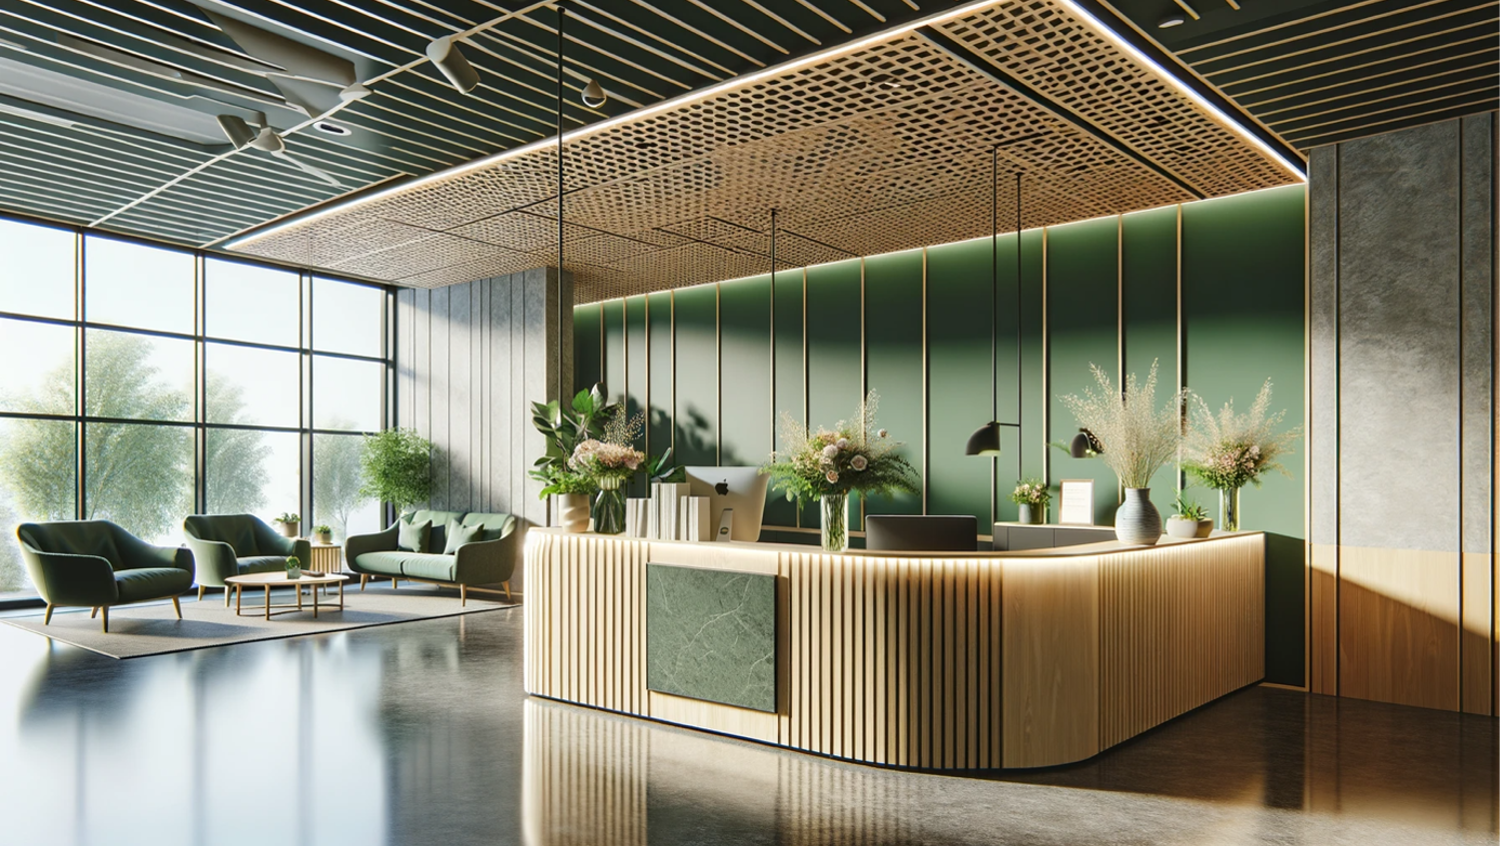 En AI-genererad bild som föreställer en kontorsreception i träpanel med växter på. Rummet har gröna väggar och stora fönster.